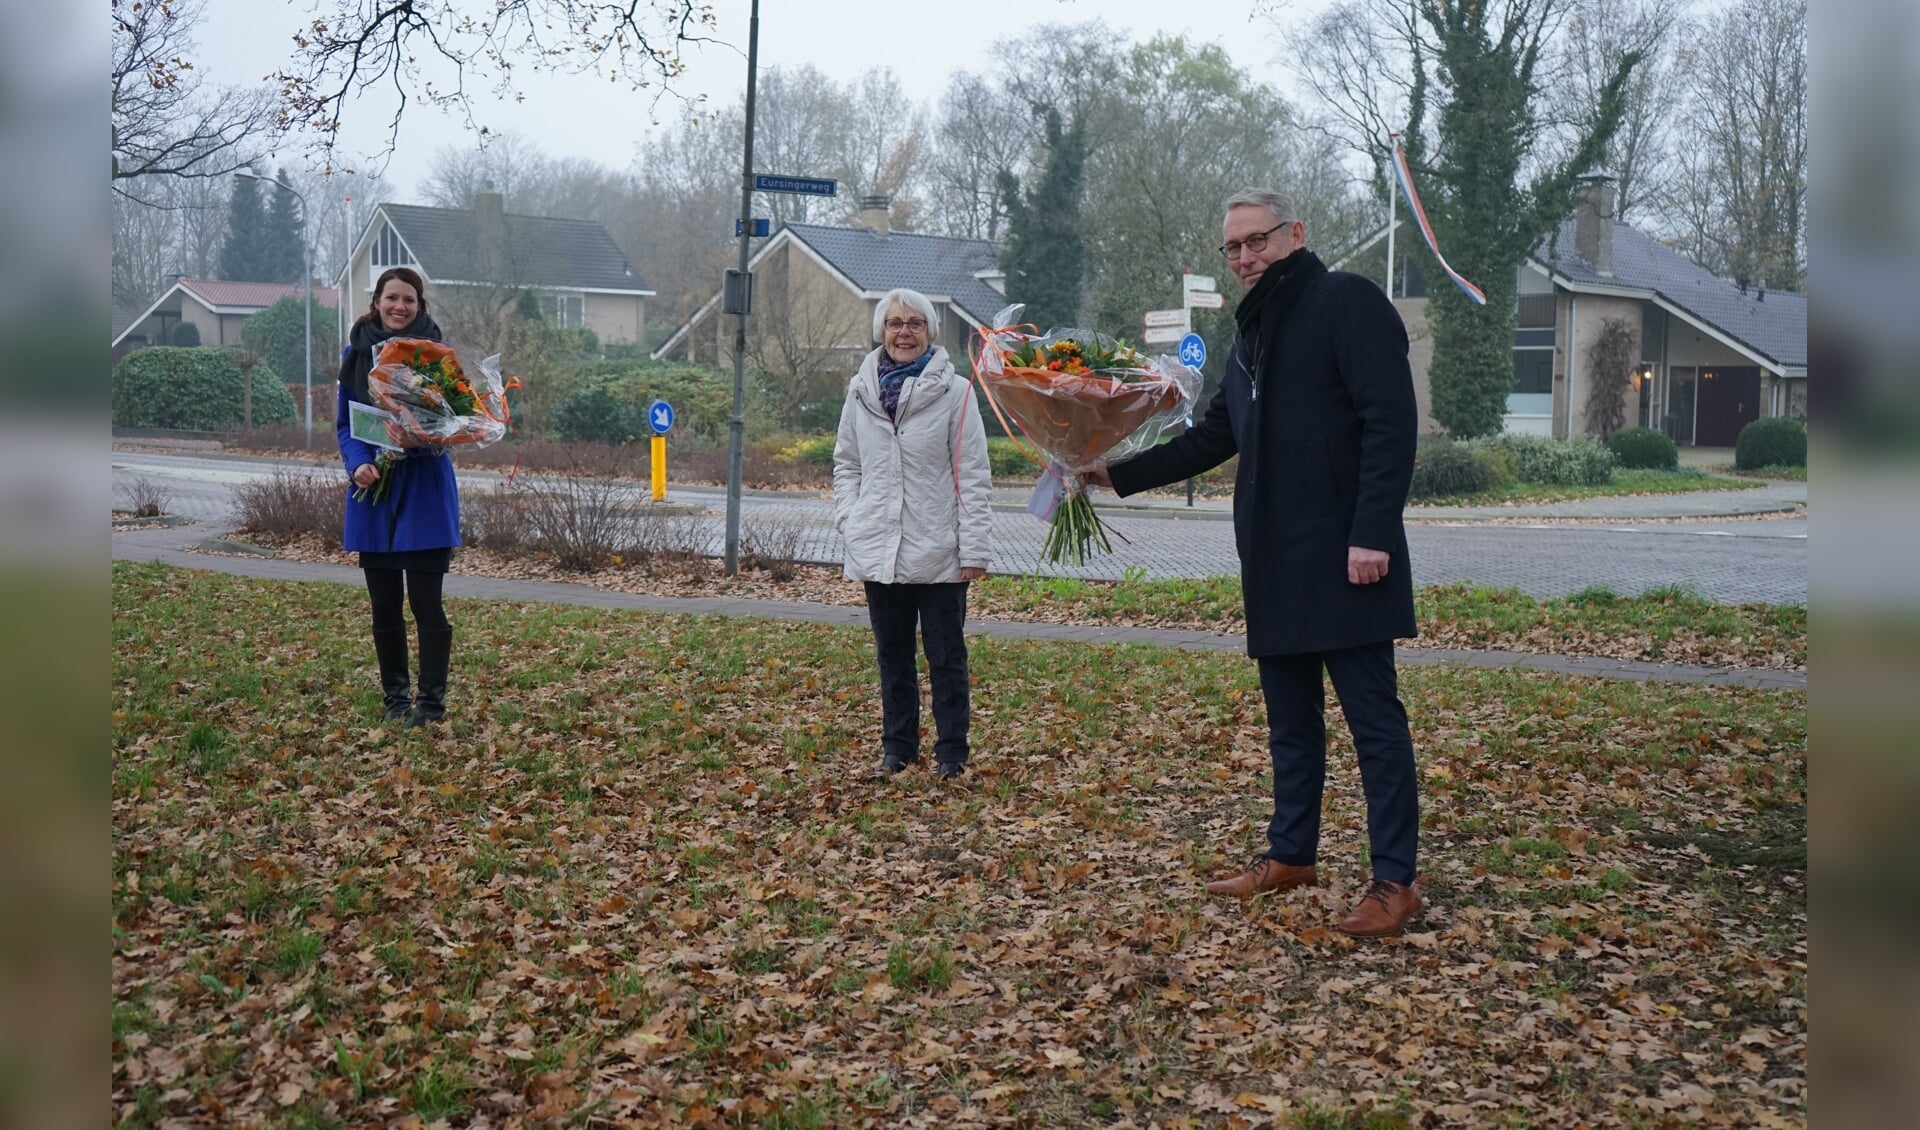 De dames Douma en Boschman worden gefeliciteerd door wethouder Schipper (foto Gemeente Midden-Drenthe).